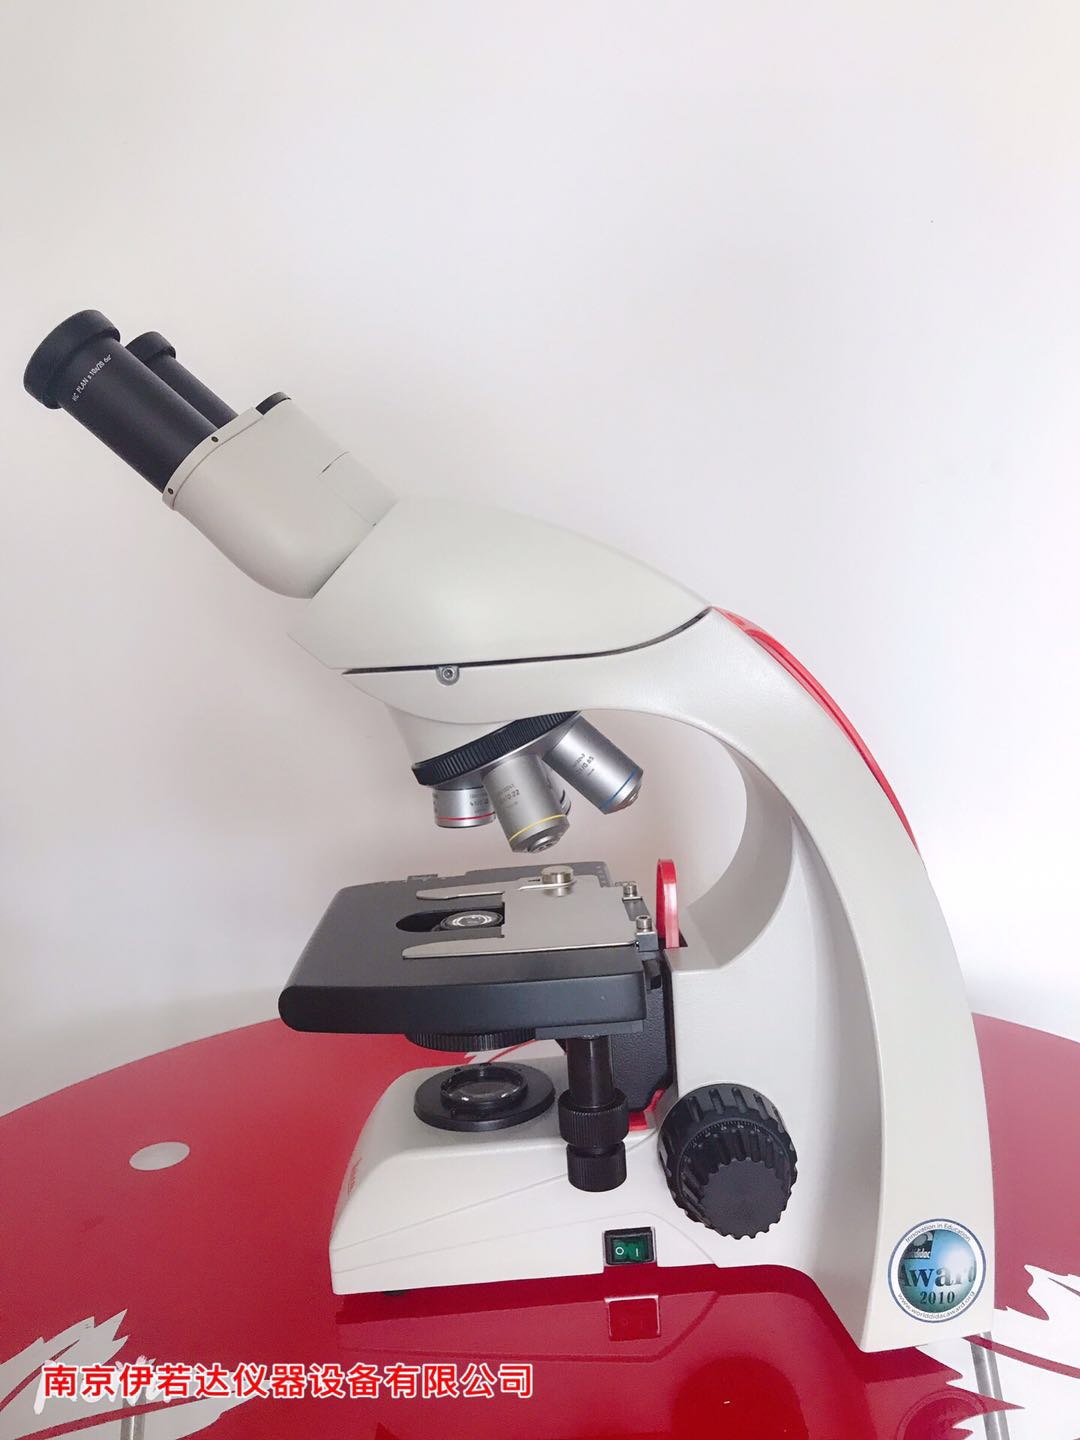 徕卡Leica显微镜莱卡DM500 莱卡电子显微镜物镜  显微镜现货供应 徕卡厂家促销 显微镜价格优惠 售后有保障示例图1